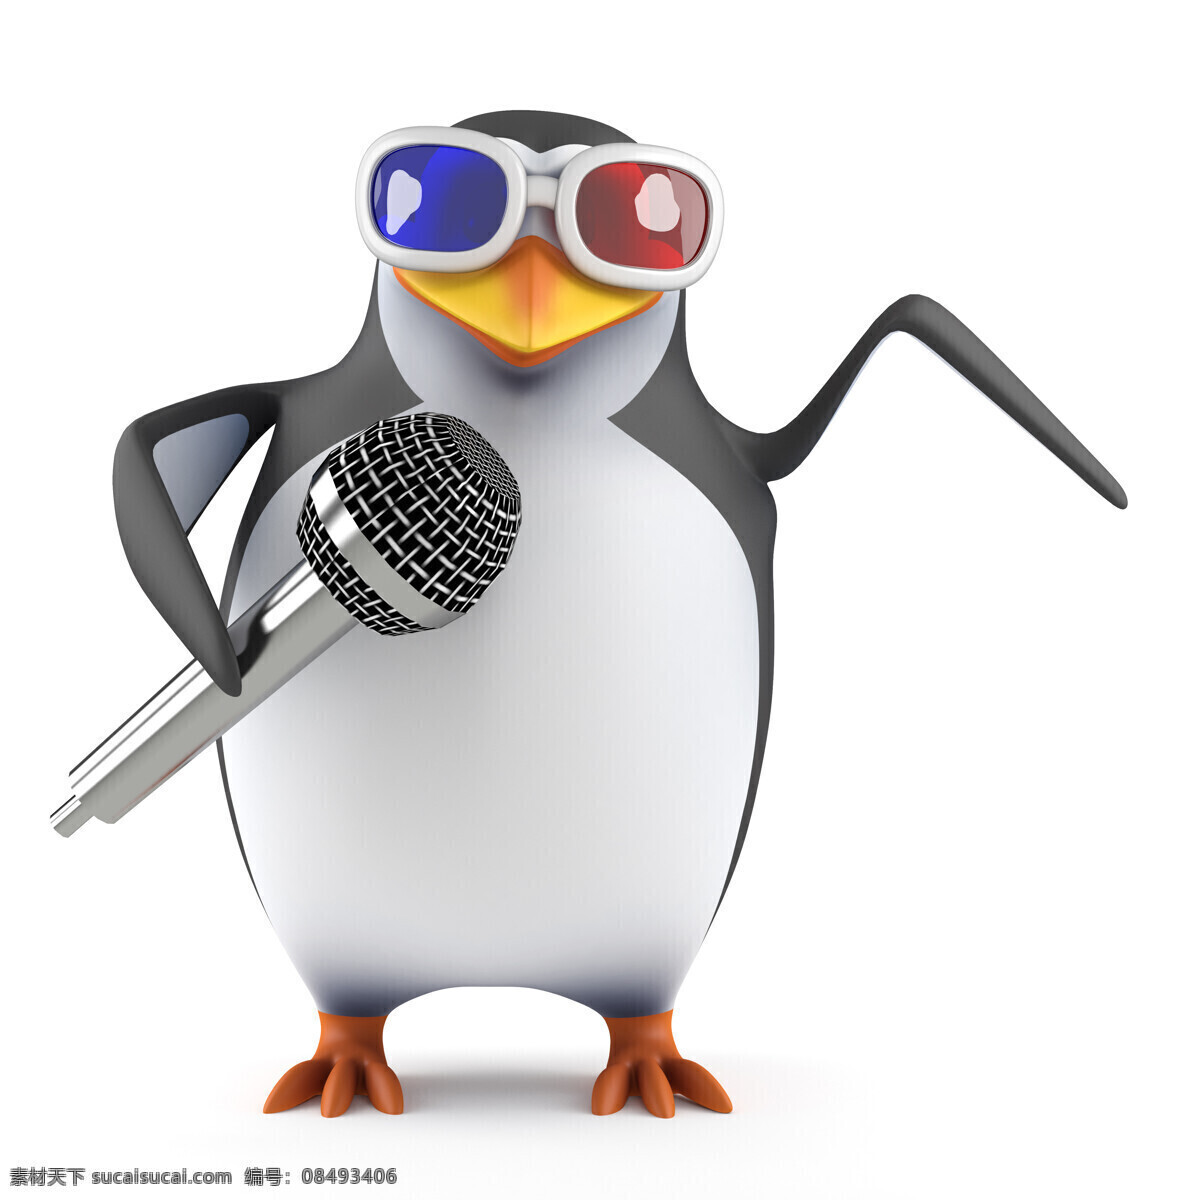 麦克风 3d 企鹅 3d眼镜 唱歌的企鹅 话筒 卡通企鹅 3d企鹅 卡通动物 3d动物 陆地动物 生物世界 白色